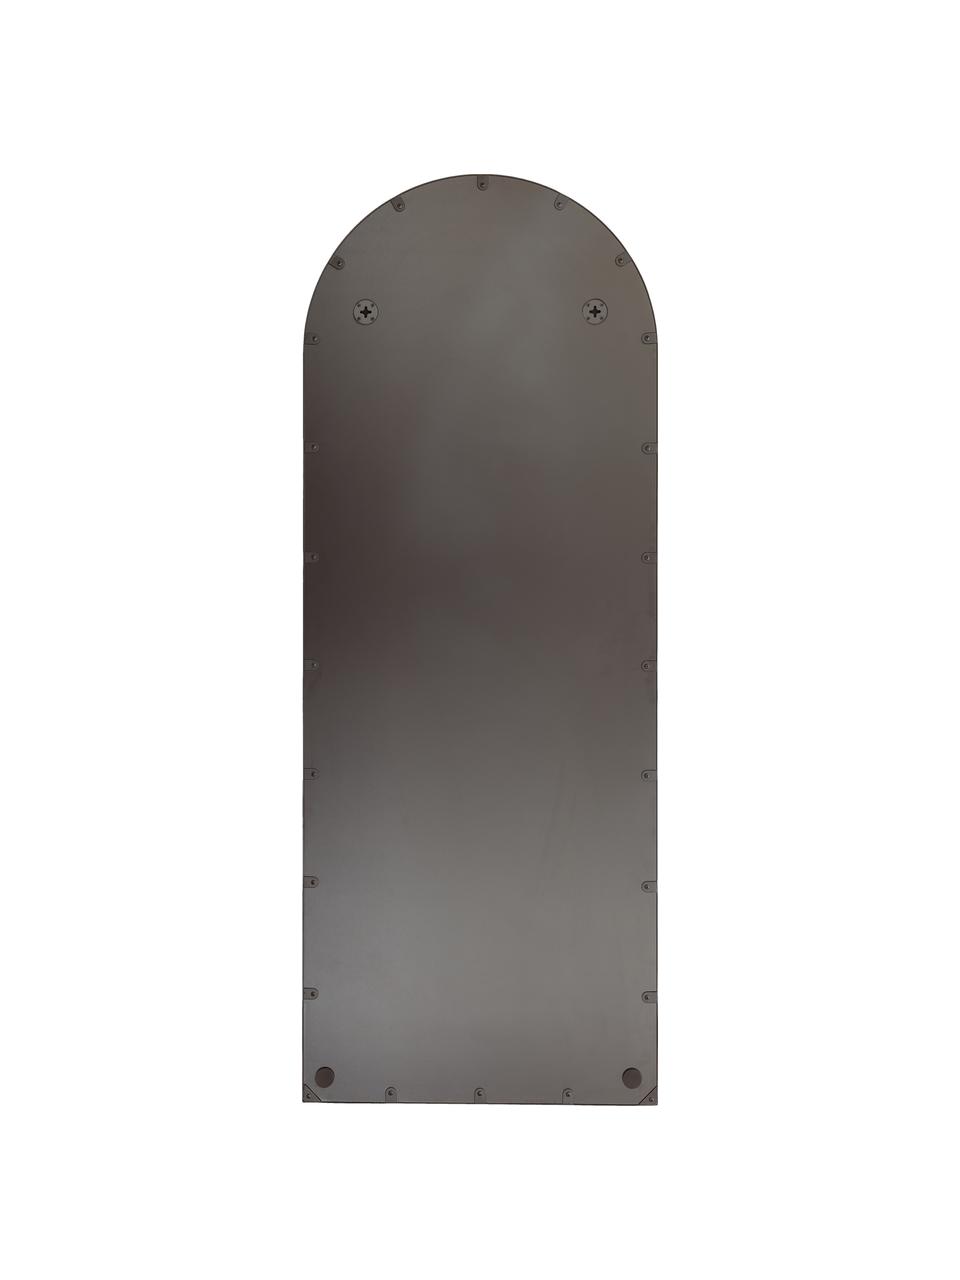 Großer Ganzkörperspiegel Francis mit schwarzem Metallrahmen, Rahmen: Metall, beschichtet, Rückseite: Mitteldichte Holzfaserpla, Spiegelfläche: Spiegelglas, Schwarz, B 65 x H 170 cm